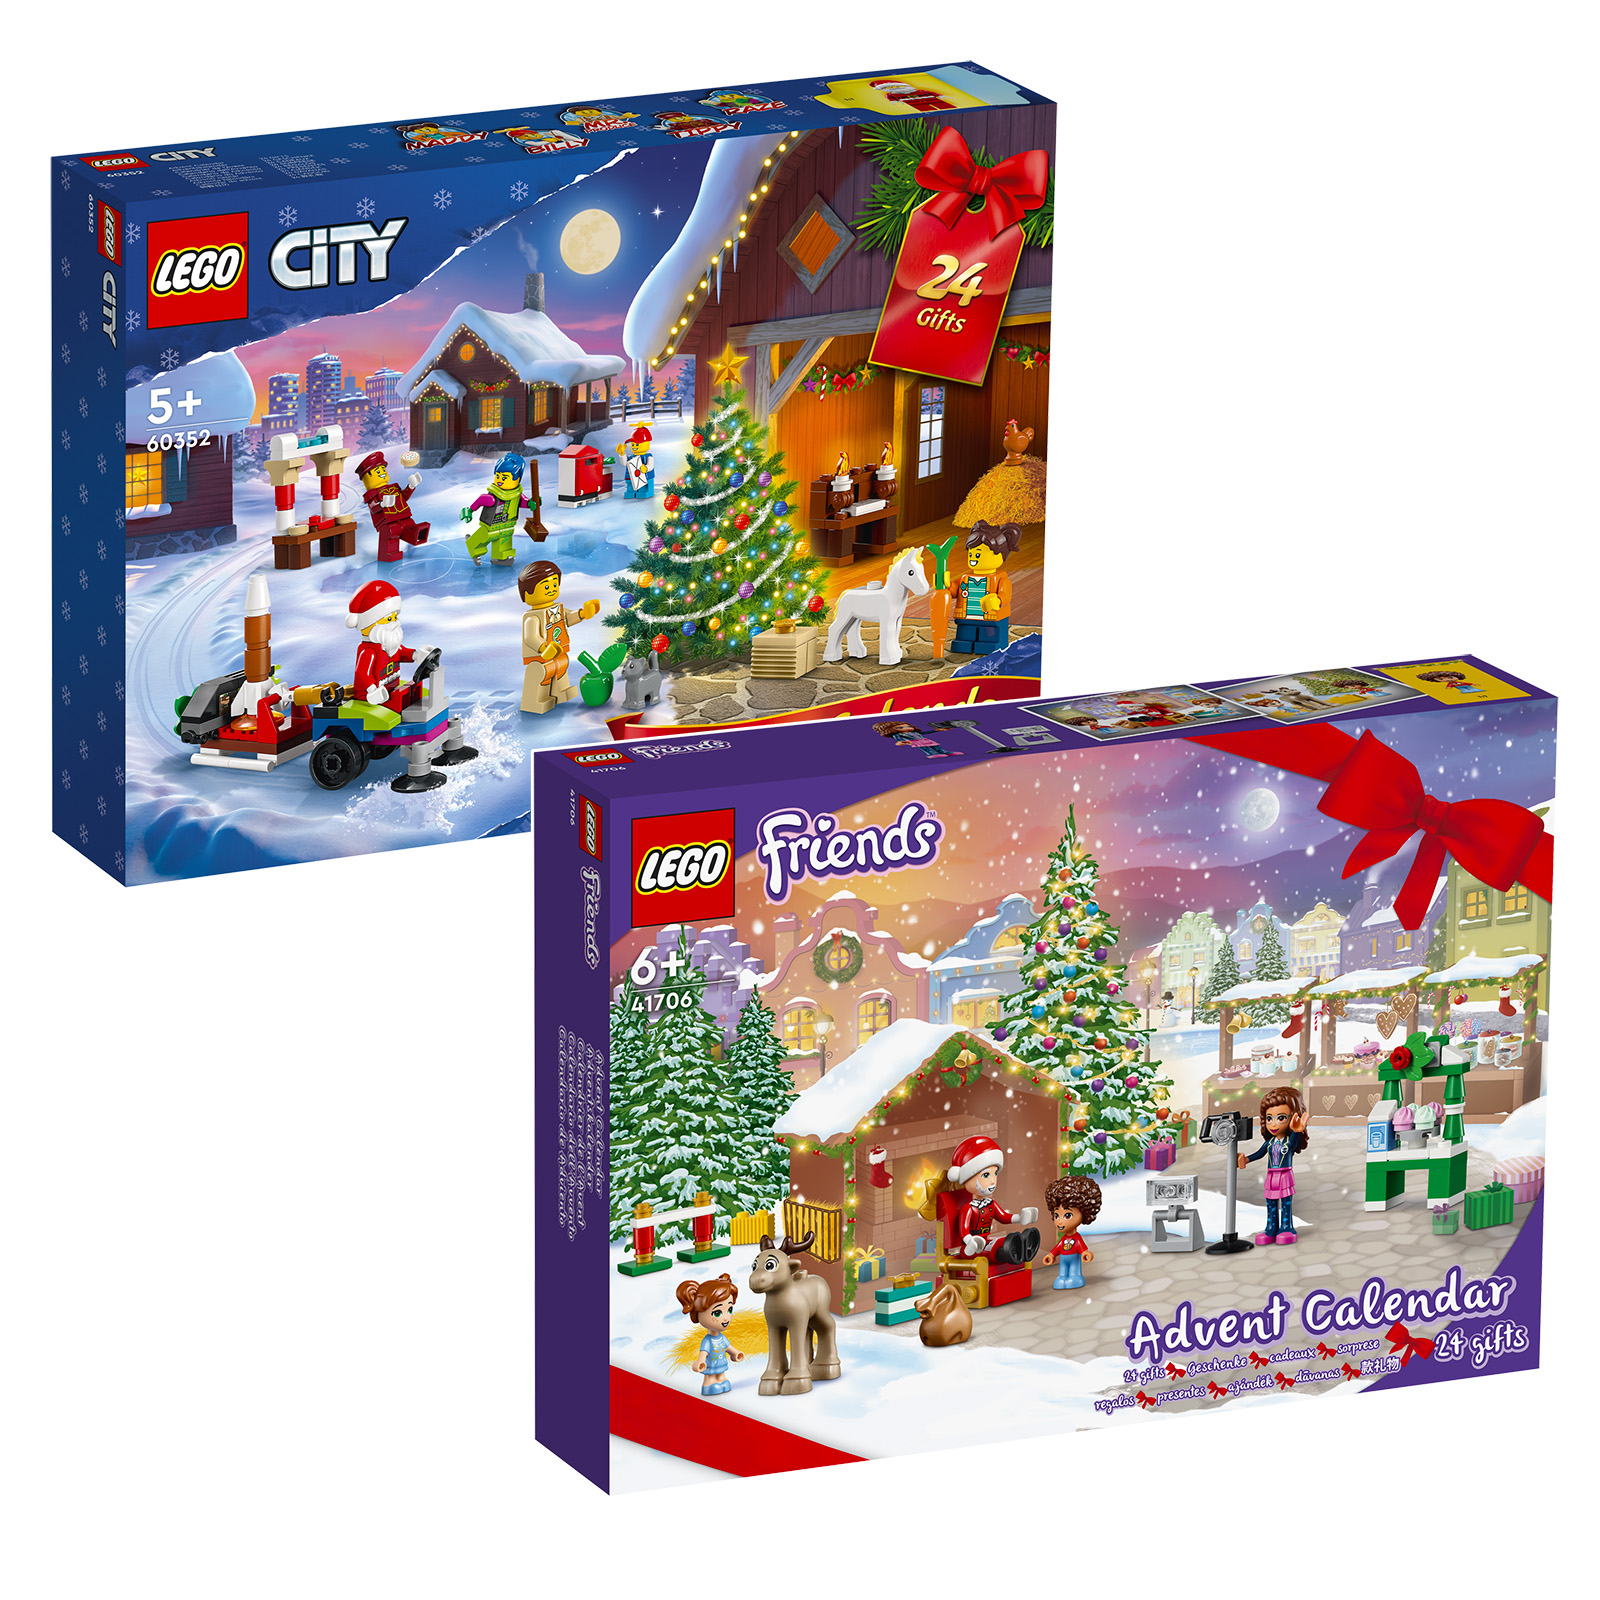 アドベント カレンダー 2022 LEGO CITY & Friends: セットはショップでオンラインです